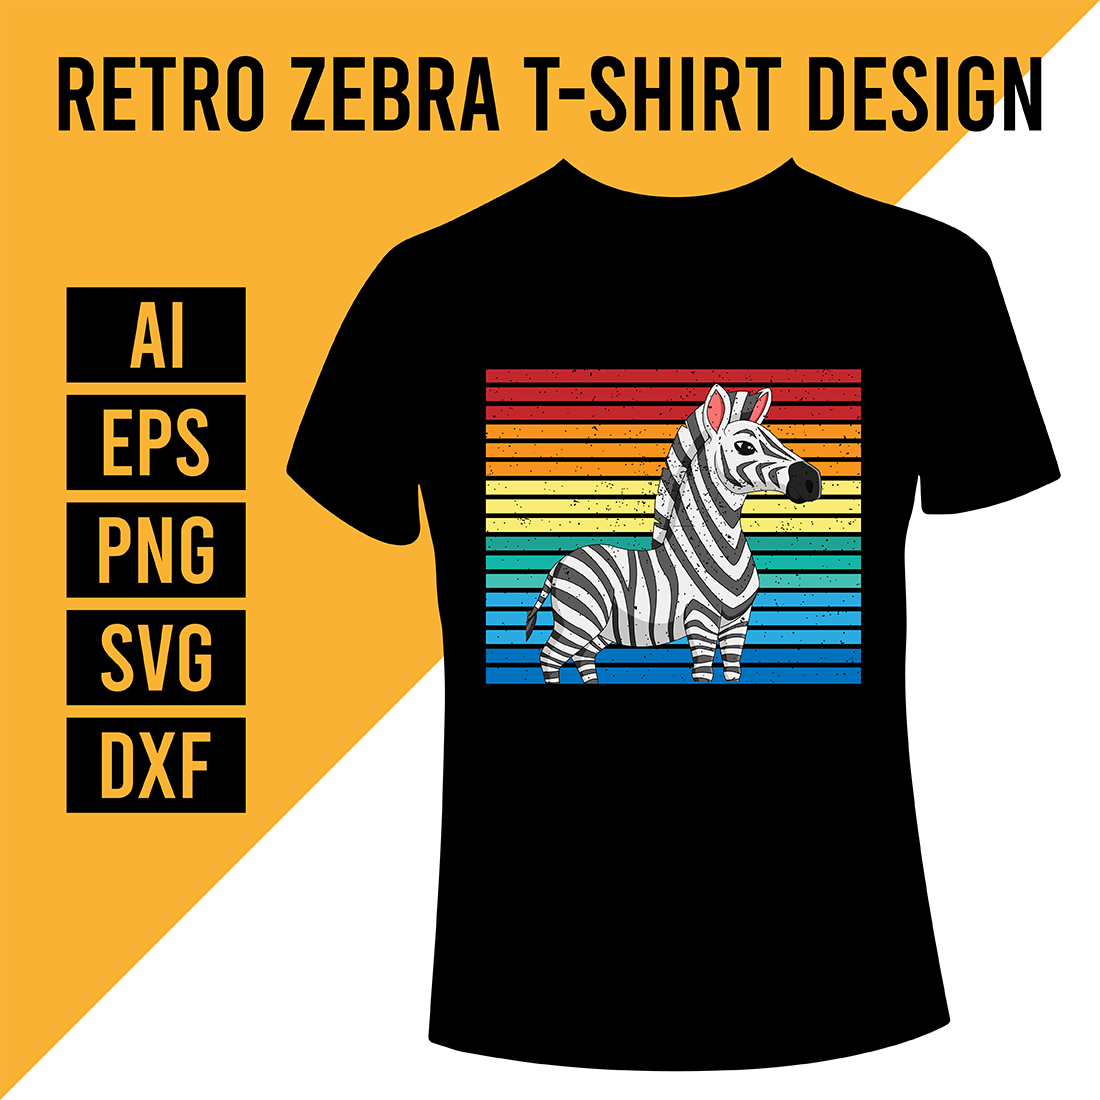 Retro Zebra T-Shirt Design cover image.